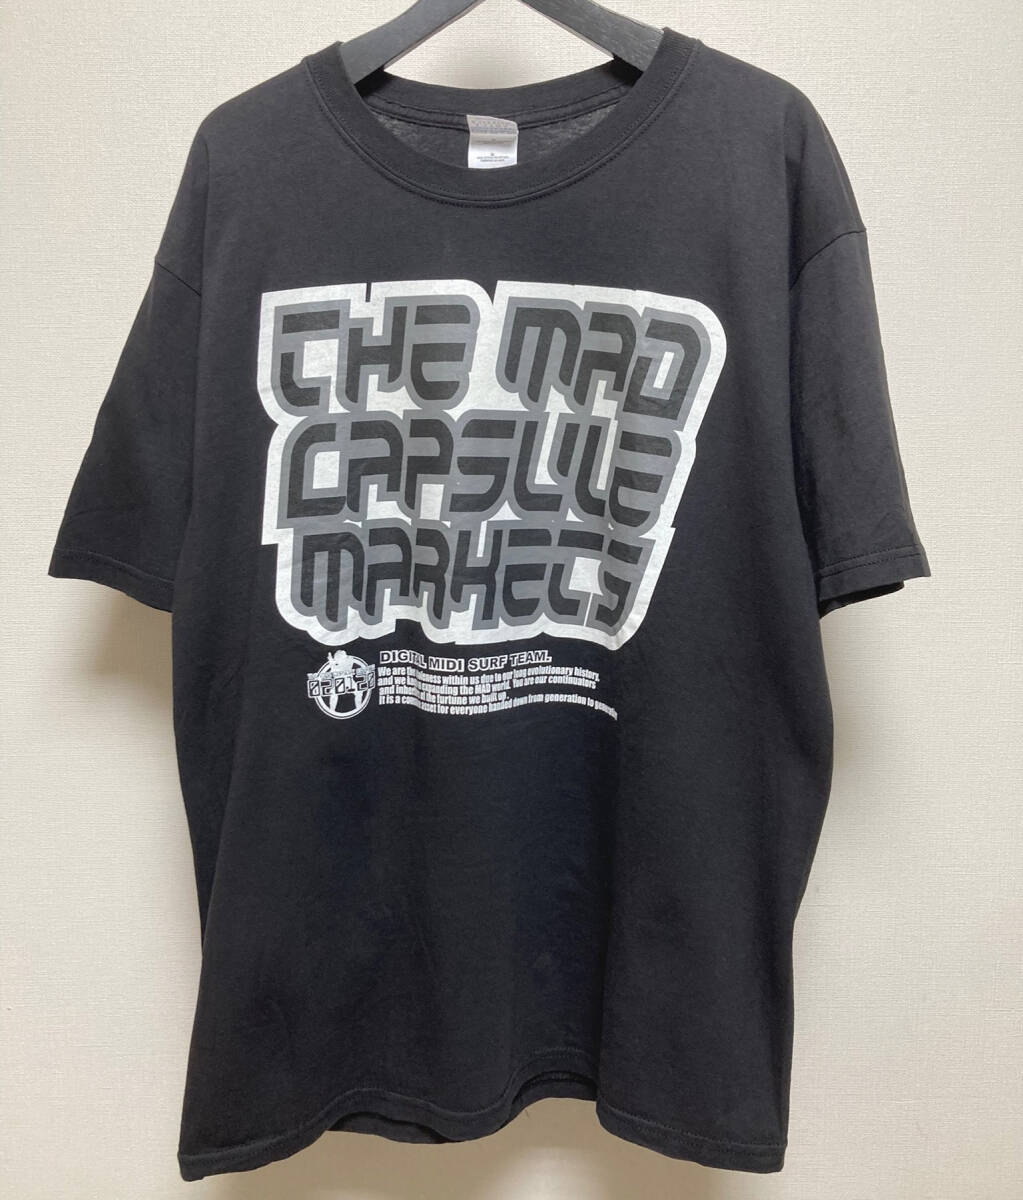 THE MAD CAPSULE MARKETS Tシャツ Lサイズ マッドカプセルマーケッツ 00sの画像1